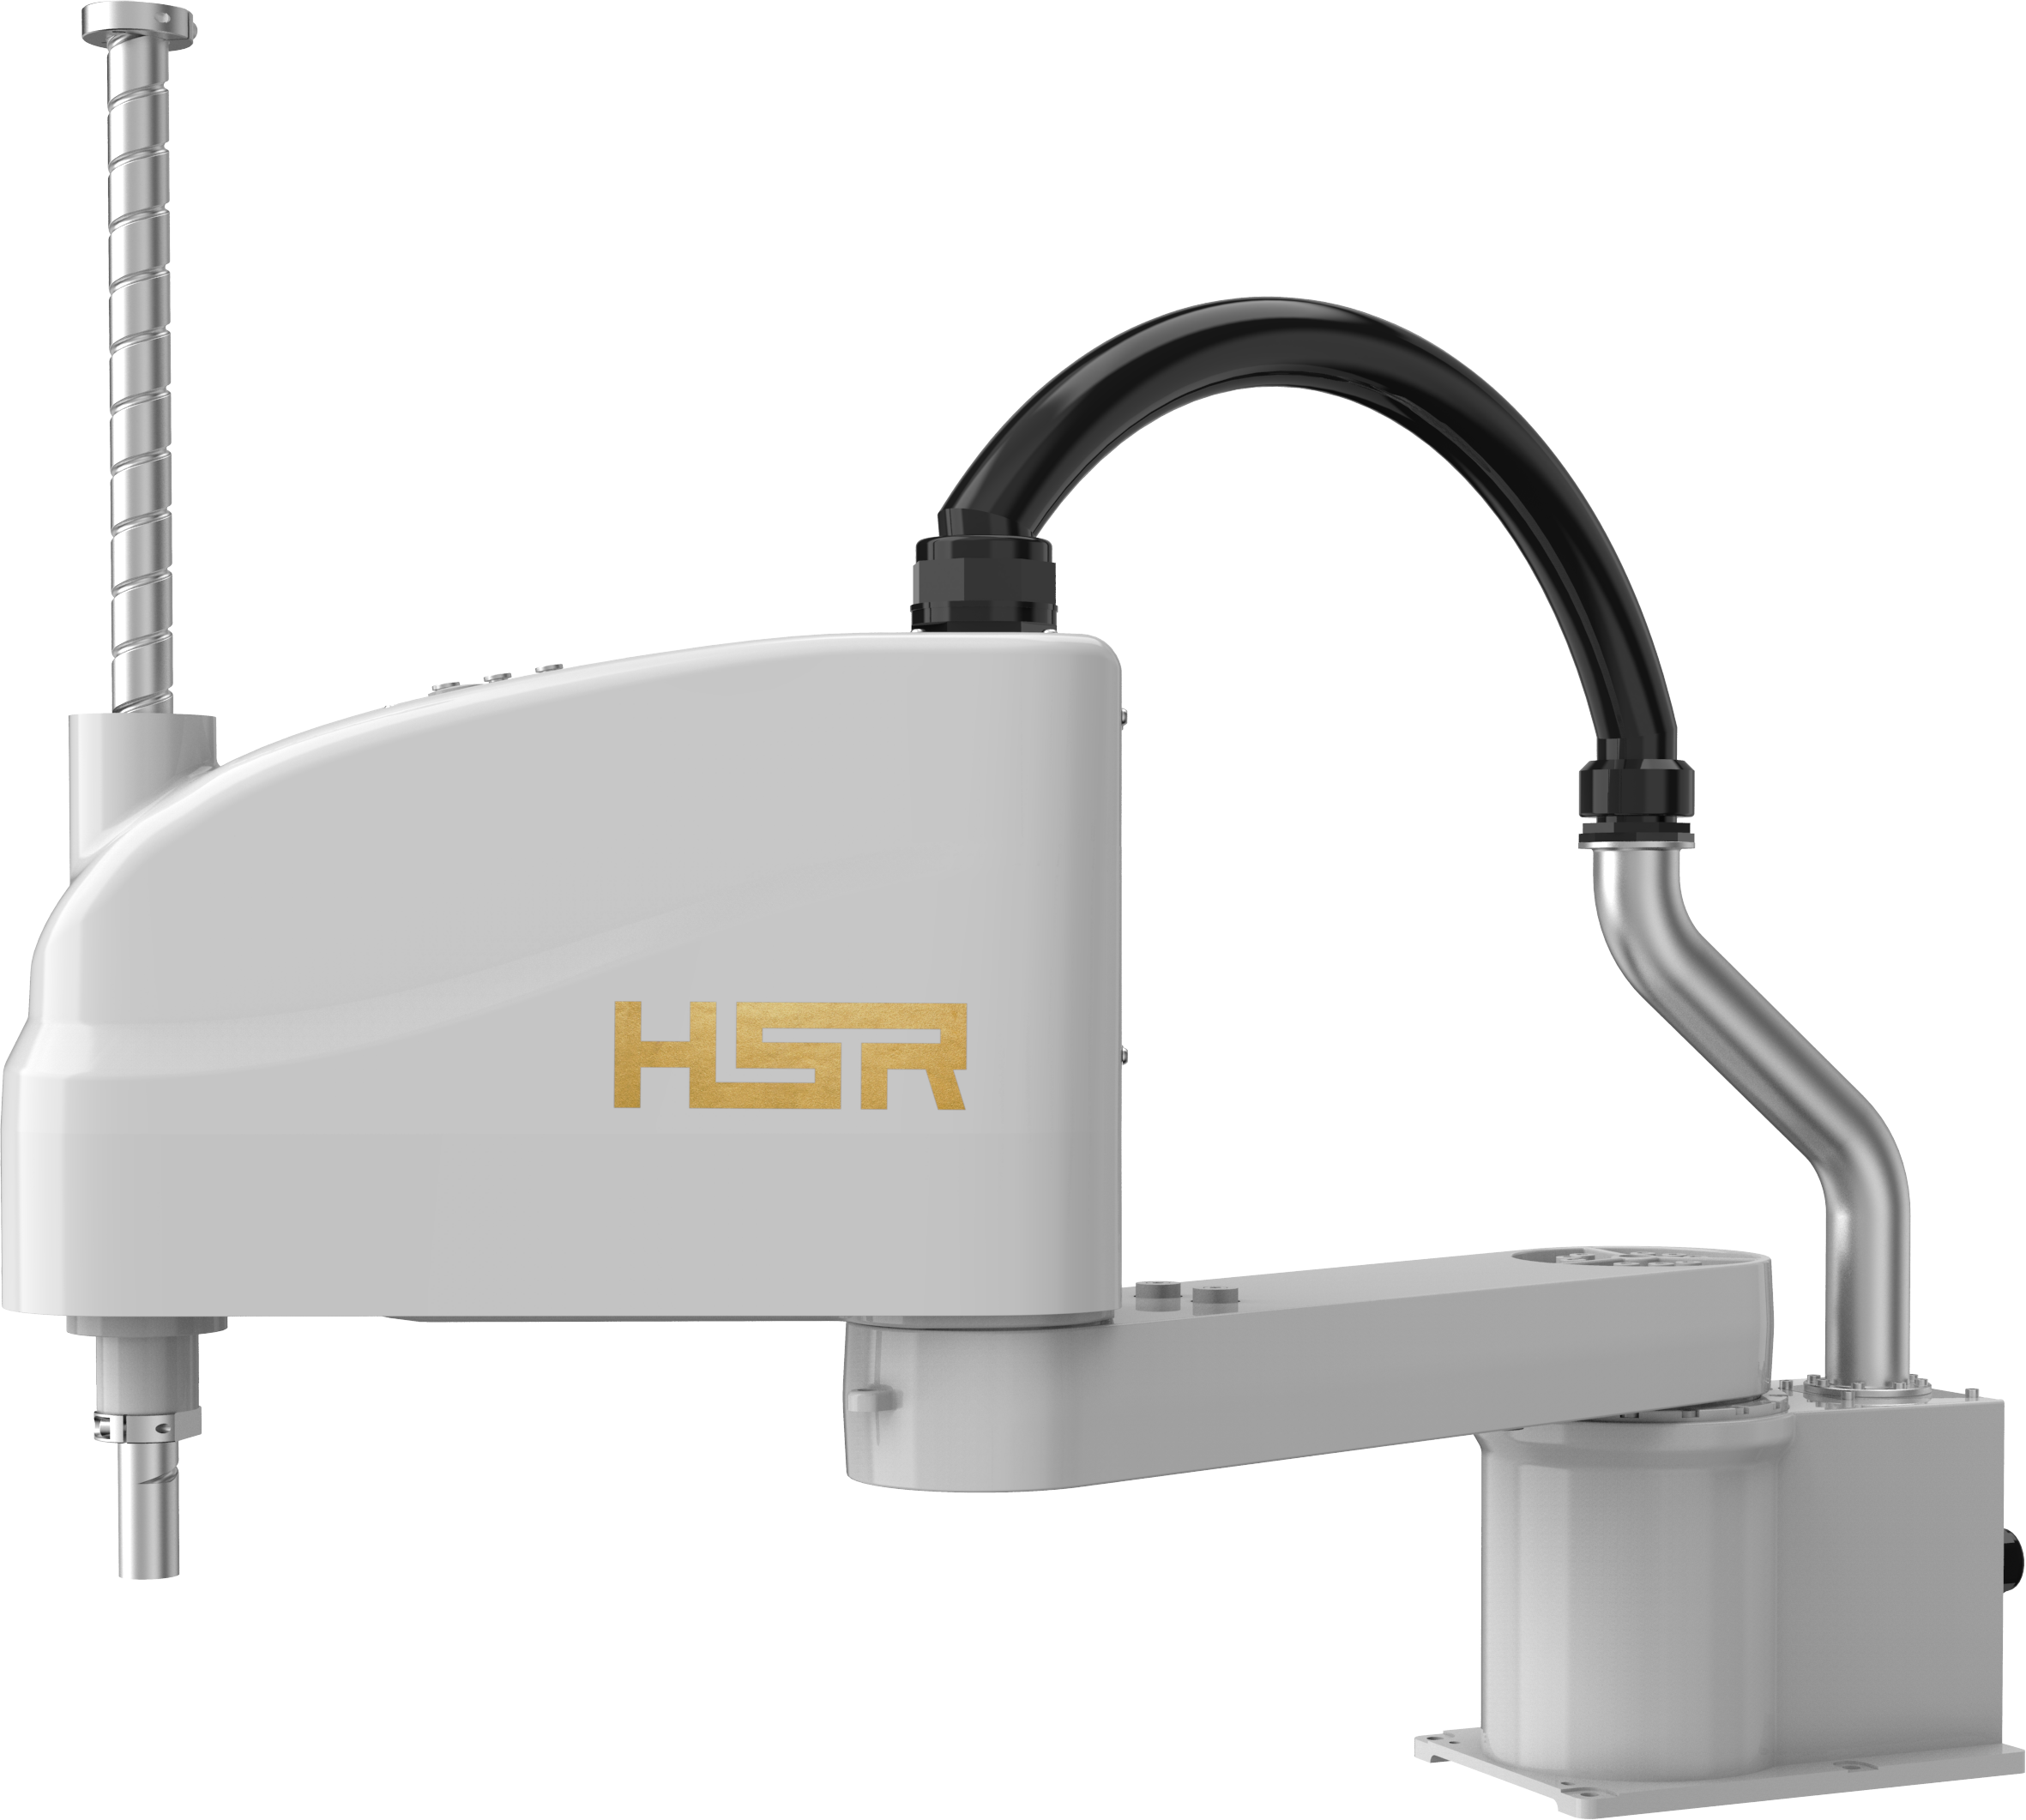 HSR-SR10-800 本体三维模型.zip